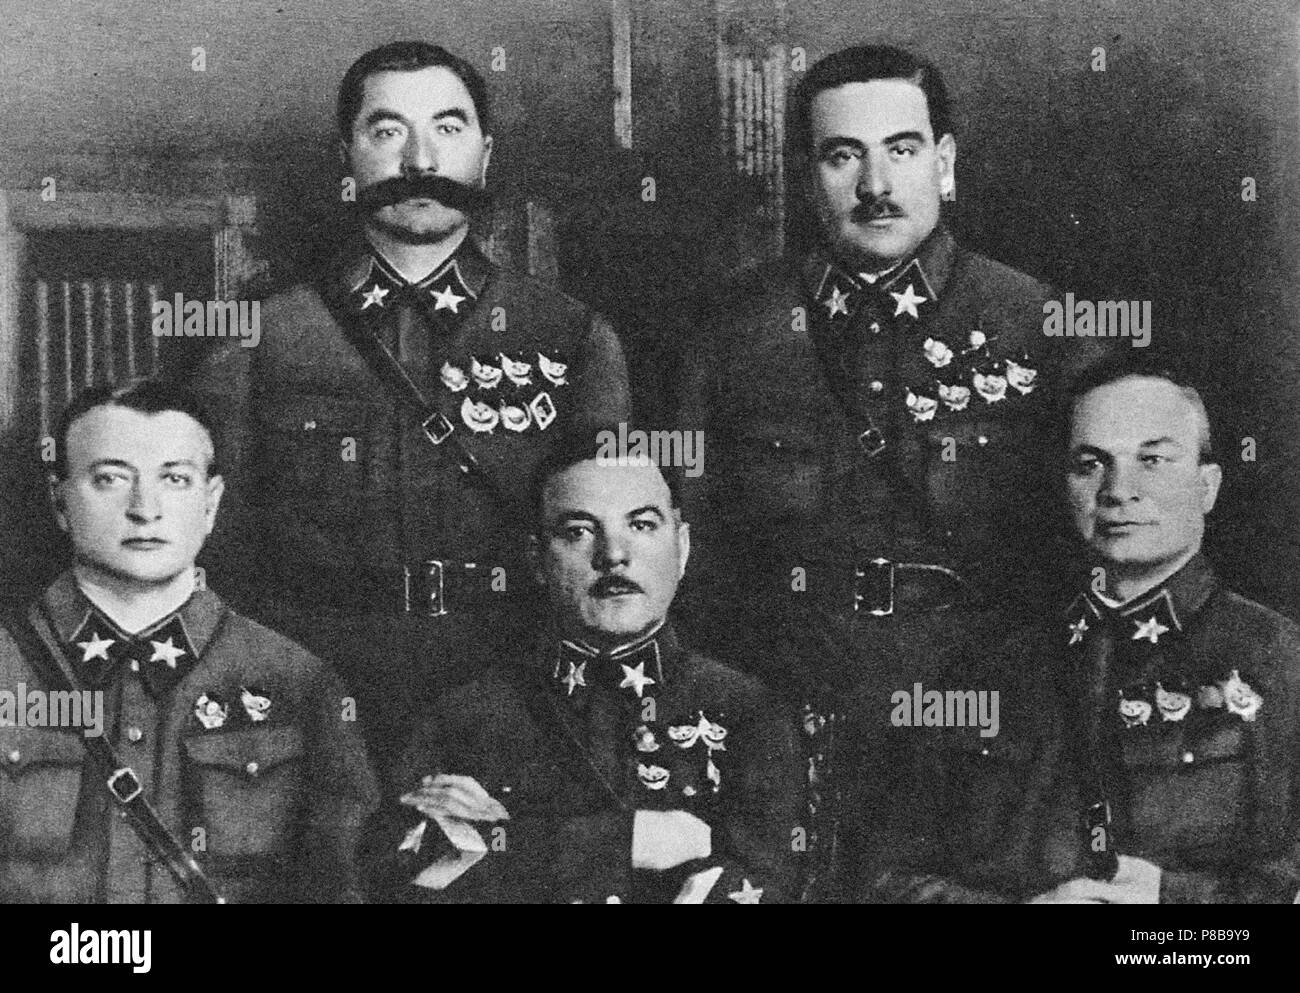 Die ersten 5 Marshals der UDSSR: Tuchatschewski, Budyonny, Woroschilow, Blyukher, Jegorow. Museum: State Central Military Museum, Moskau. Stockfoto